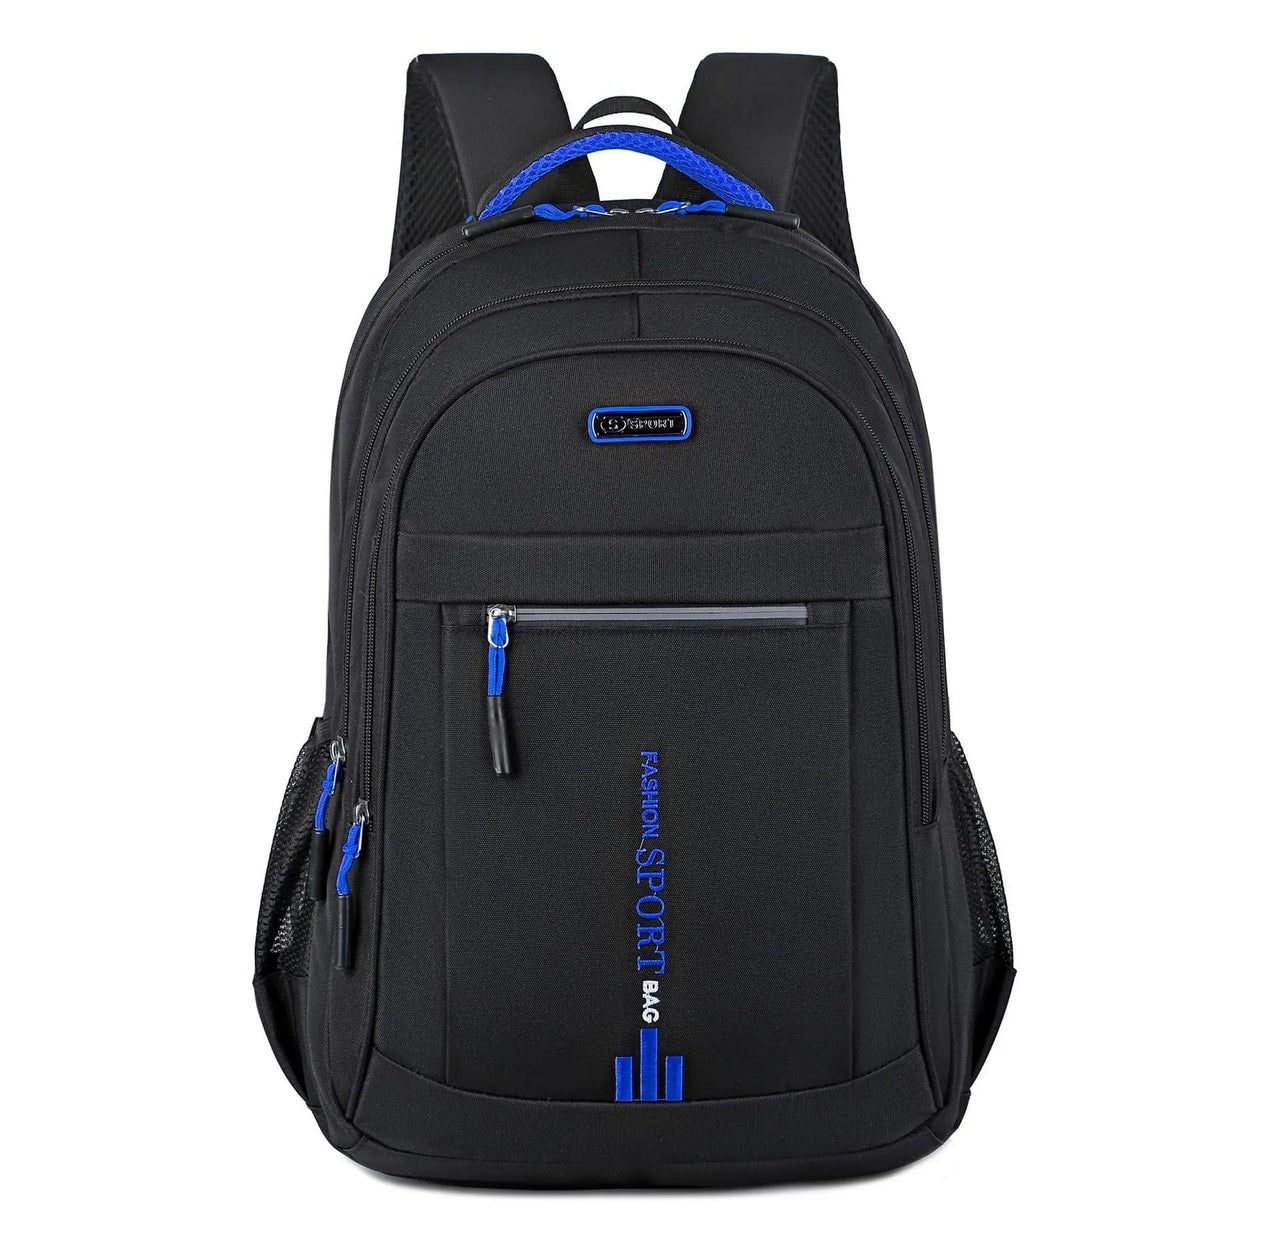 Quick Access Lightweight Backpack